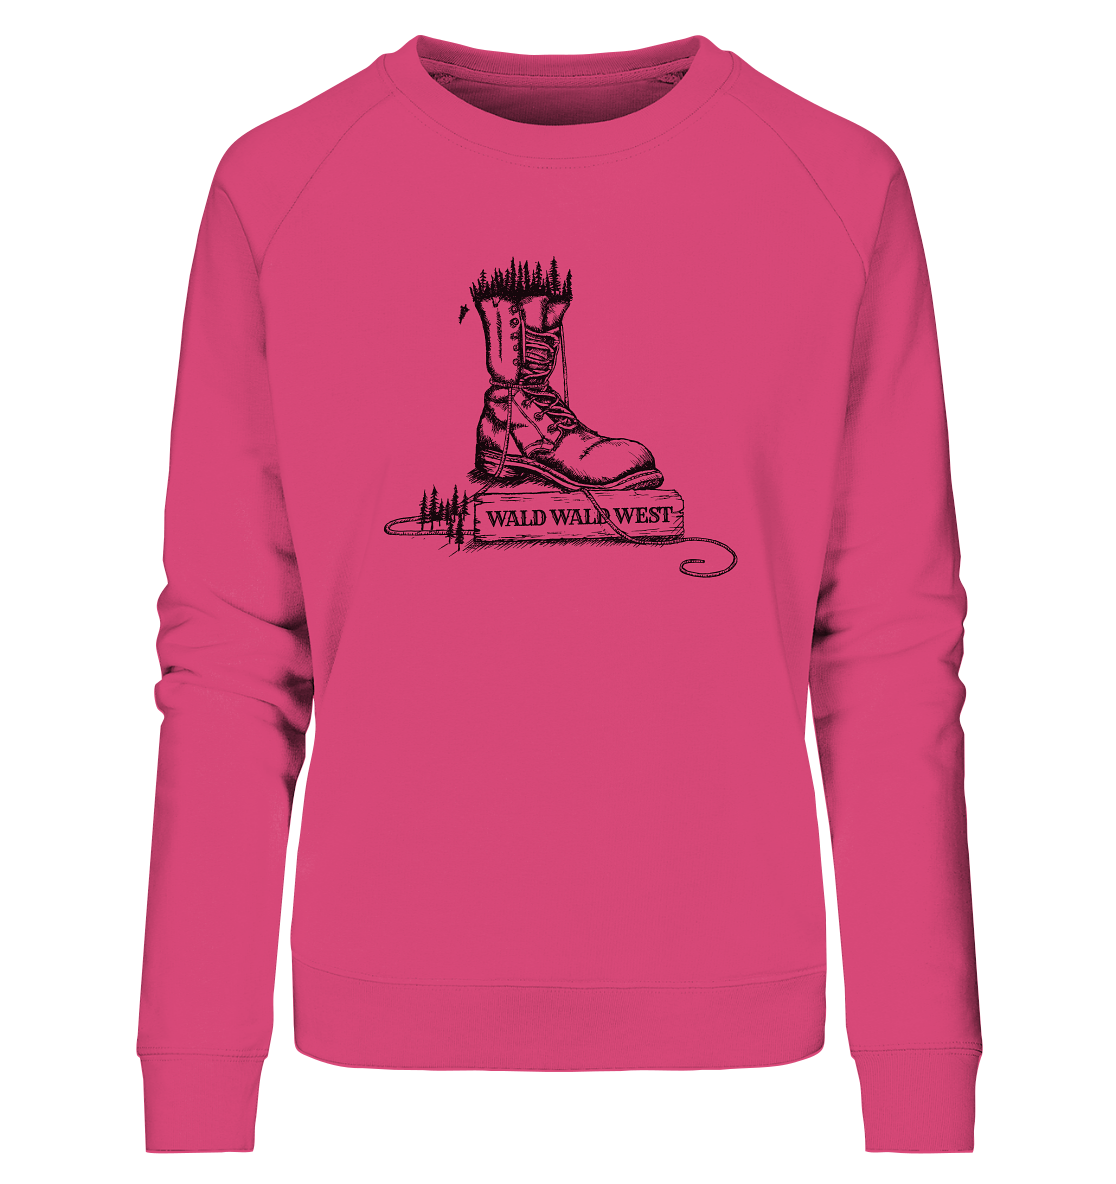 front-ladies-organic-sweatshirt-d94979-1116x.png